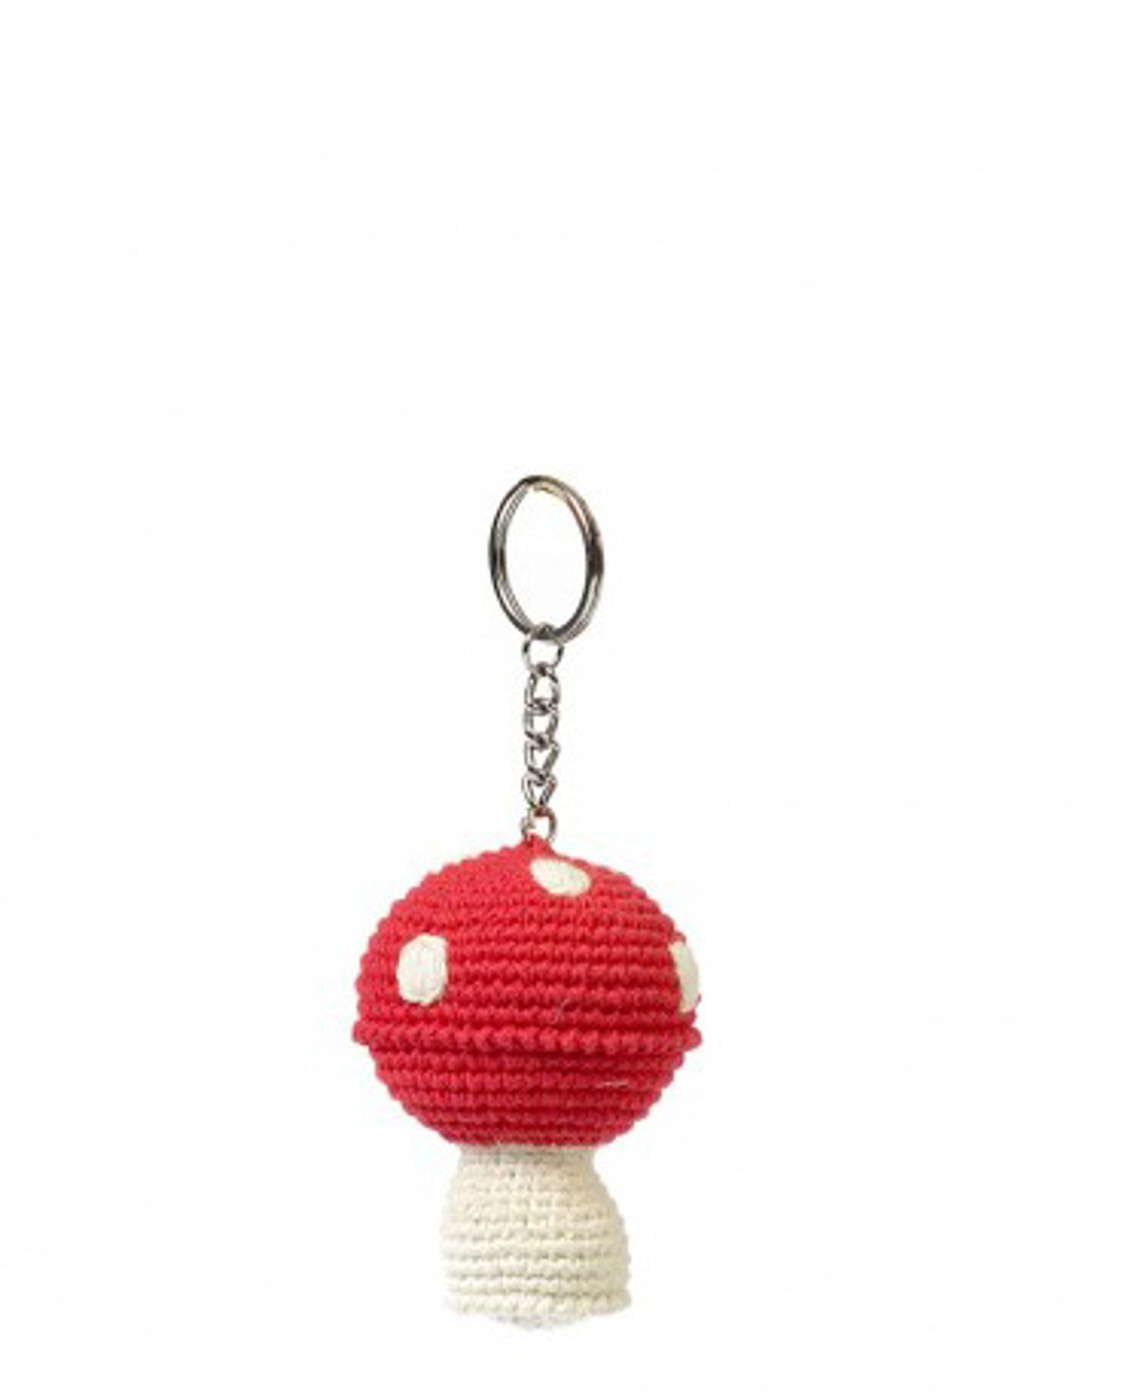 shop Anne Claire Petit  Accessori: Portachiavi Anne Claire Petit, a forma di fungo, in crochet fatto a mano.

Composizione: 100% cotone.
Dimensioni: larxalt 8x8 cm. number 1072